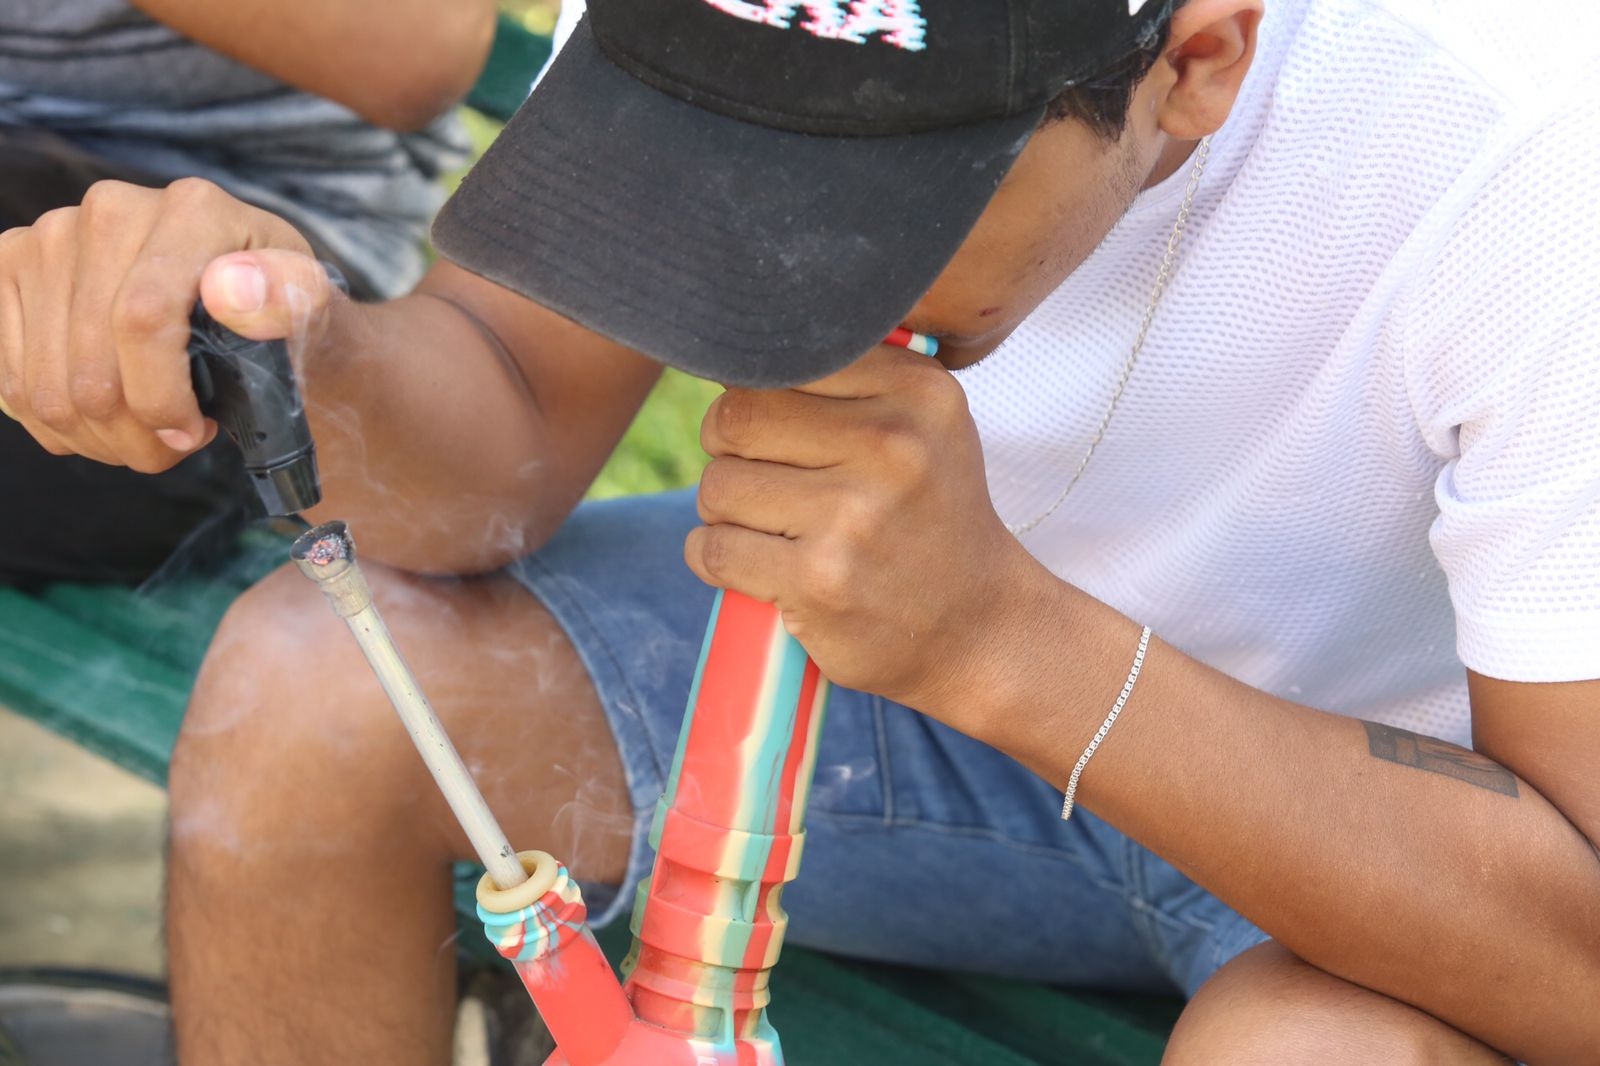 Consumo de marihuana se normaliza entre los jóvenes de Yucatán: CIJ